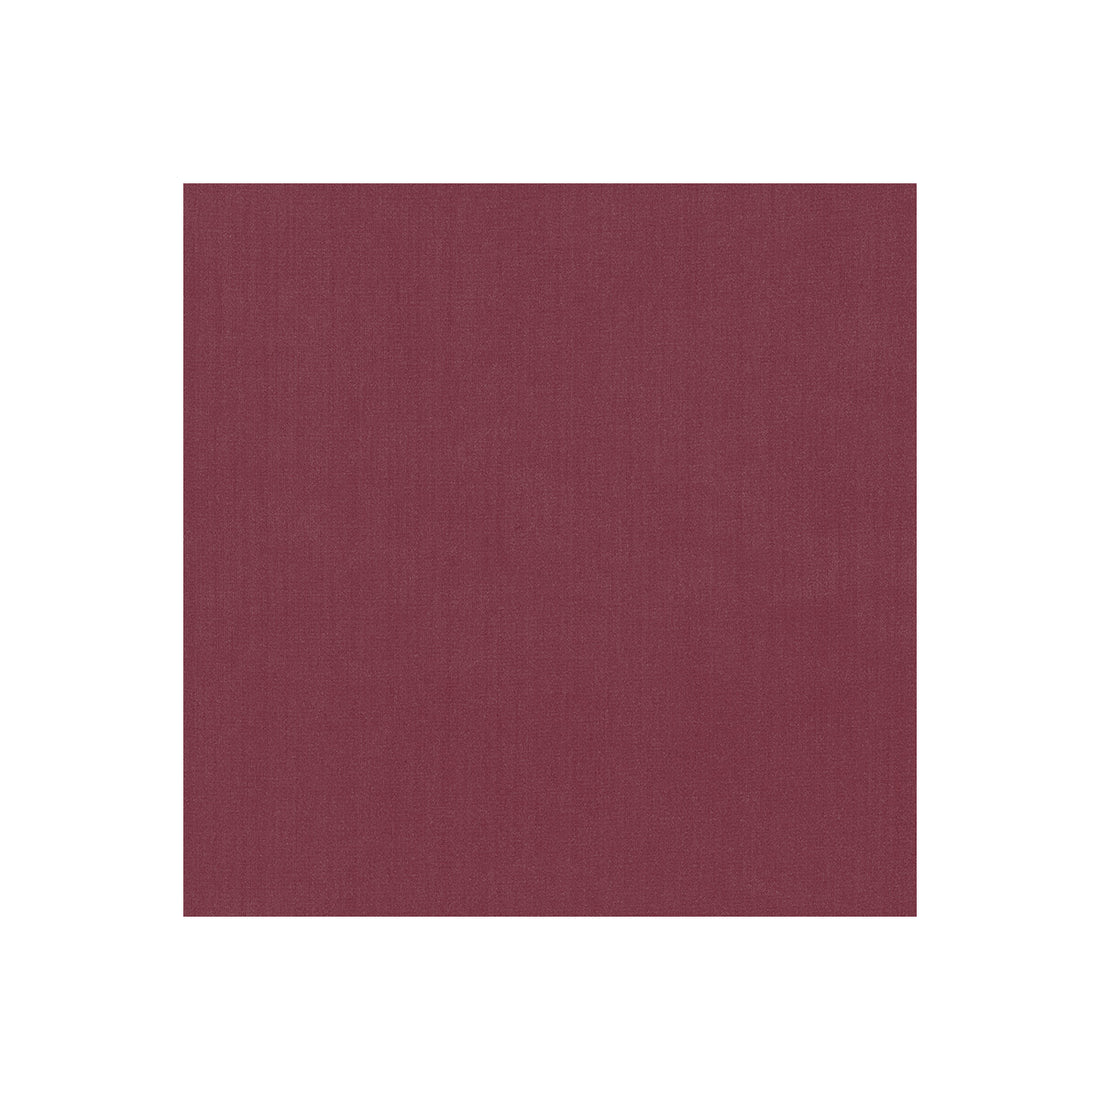 Kravet Basics fabric in 35916-9 color - pattern 35916.9.0 - by Kravet Basics